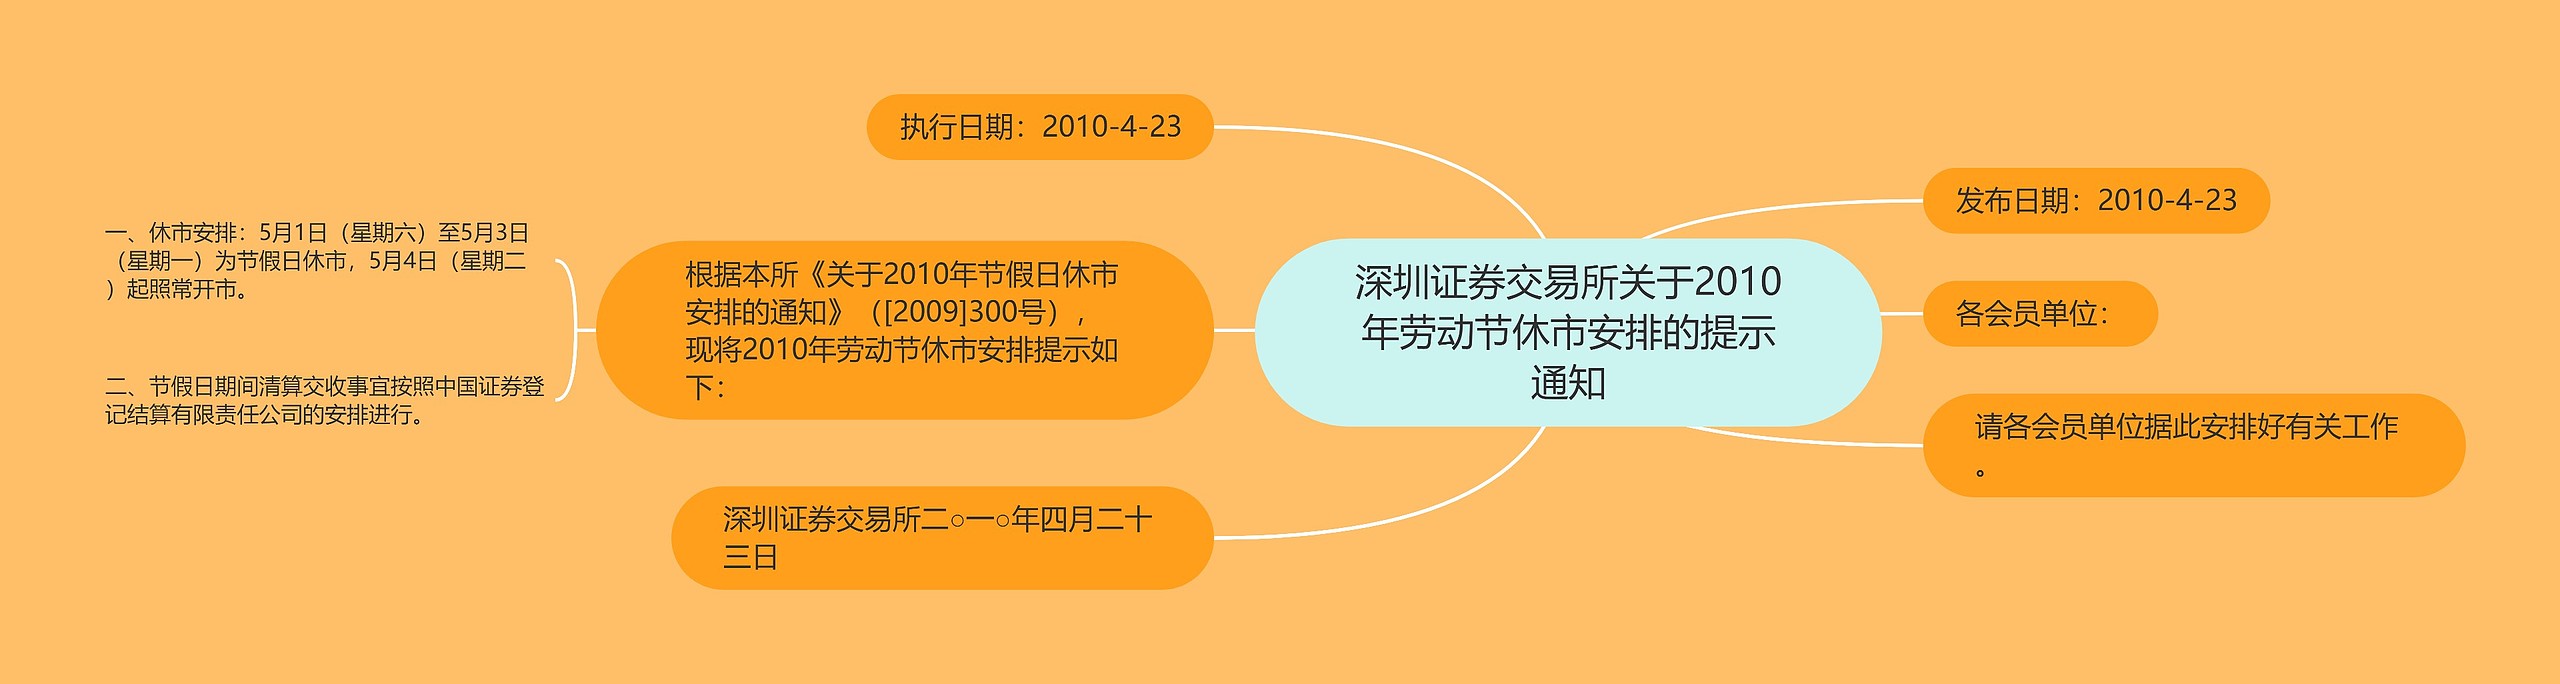 深圳证券交易所关于2010年劳动节休市安排的提示通知思维导图